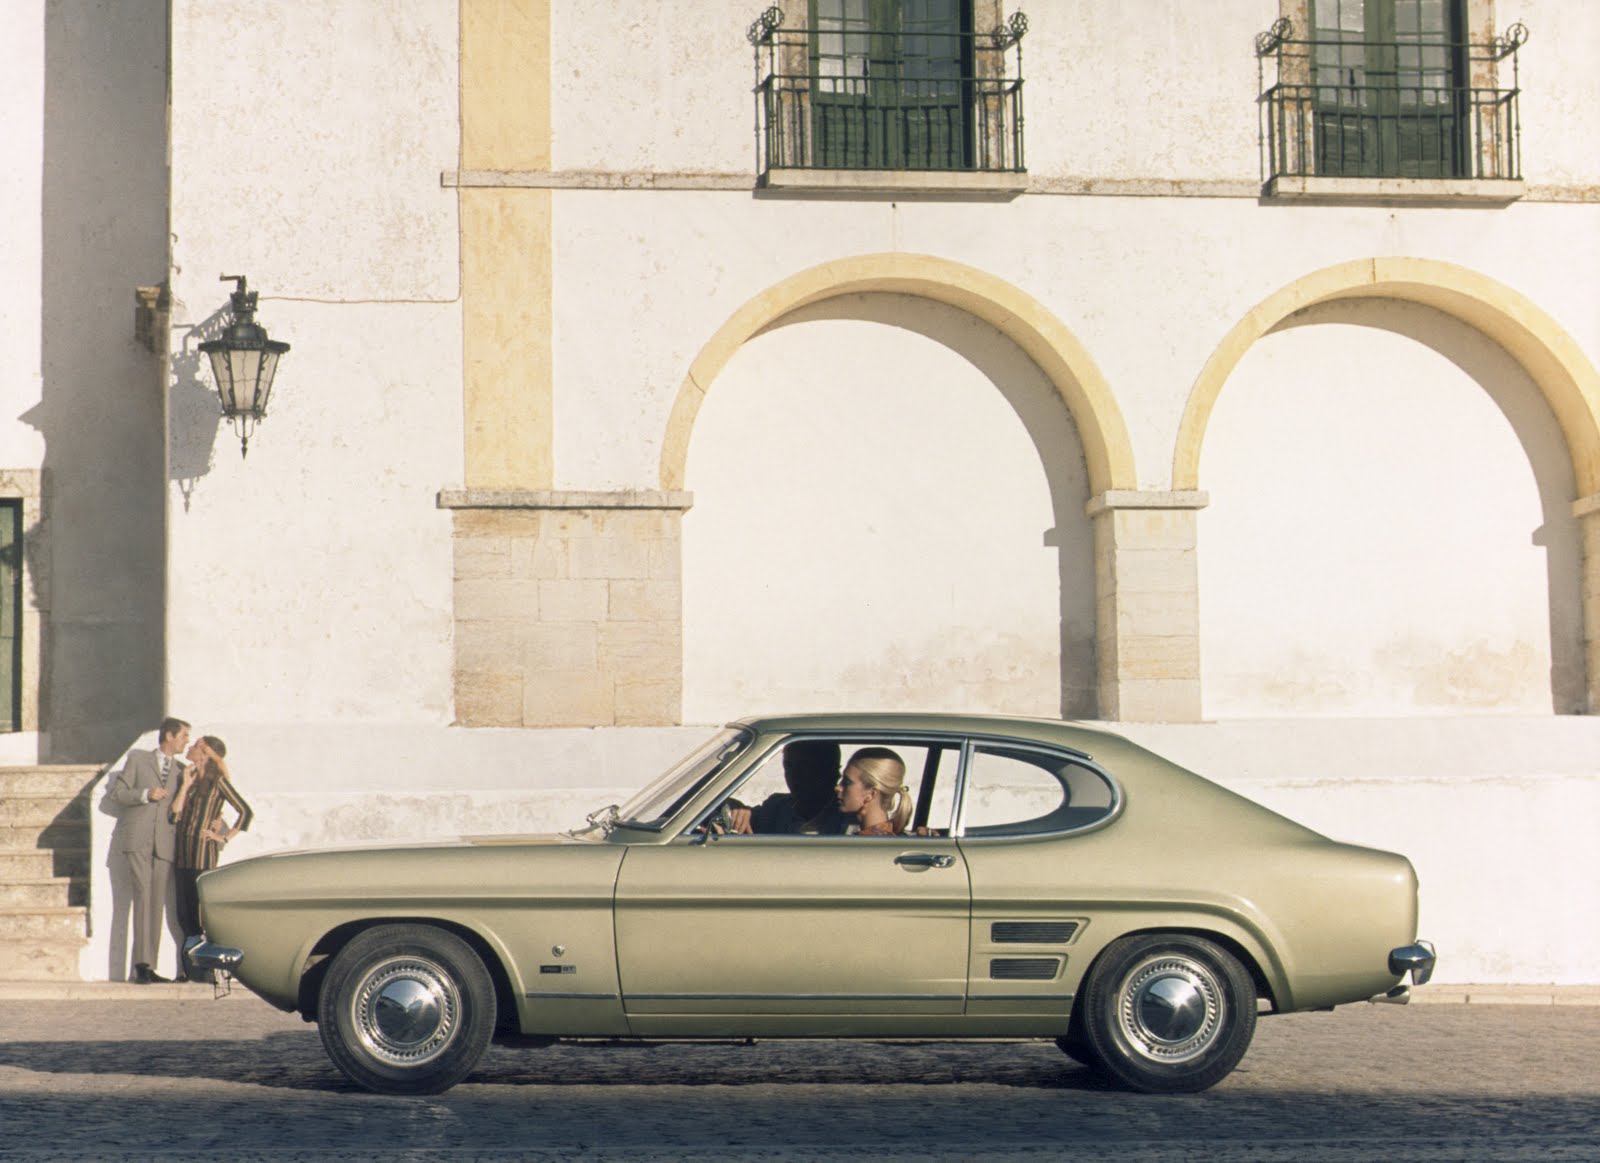 Ford_Capri_1969.jpg